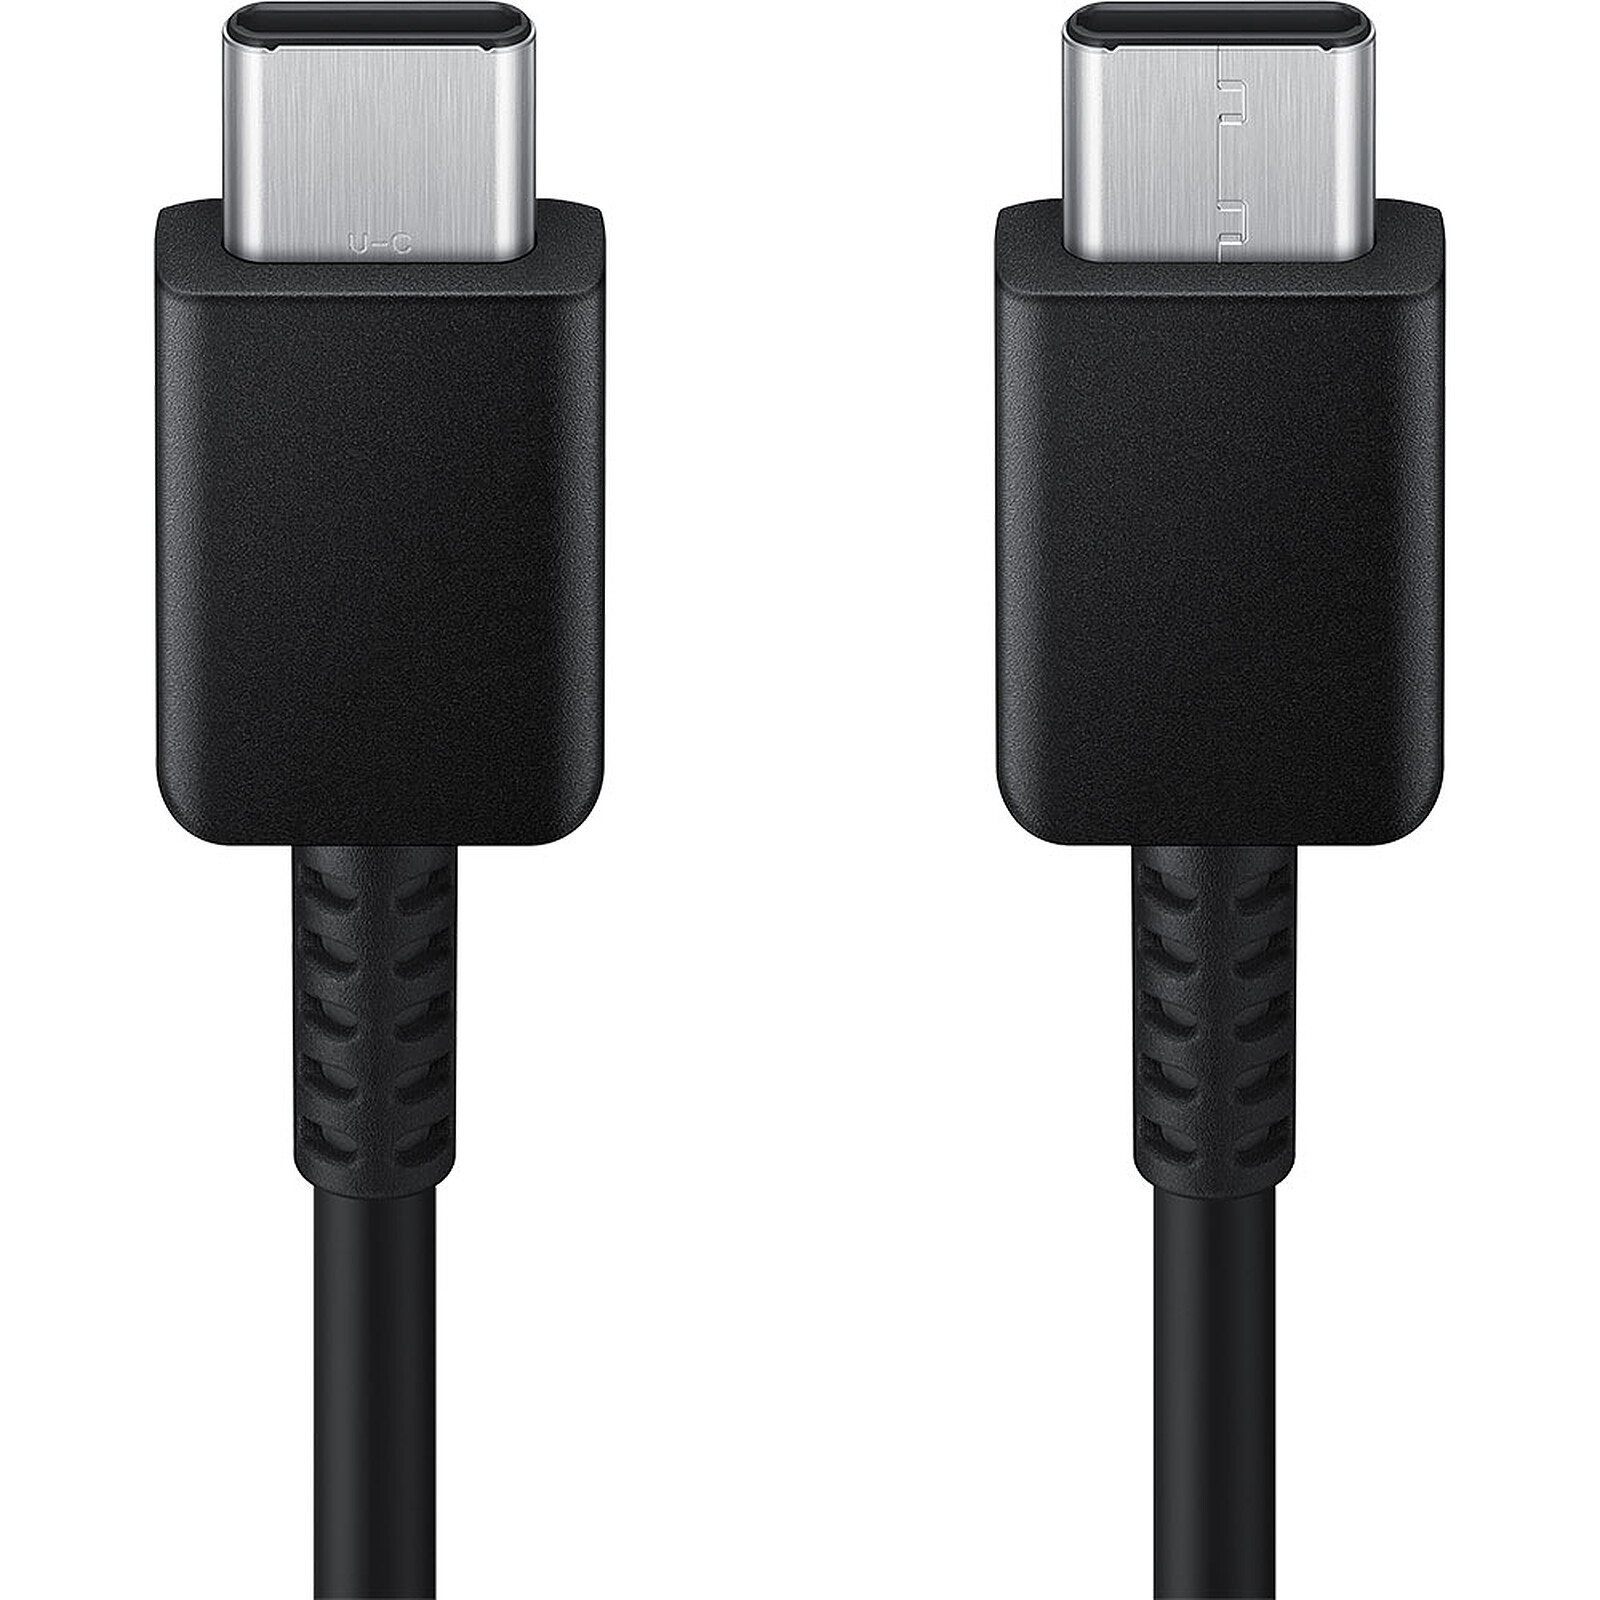 Samsung adaptateur USB-C (avec C to C cable 1.8m) - noir - power